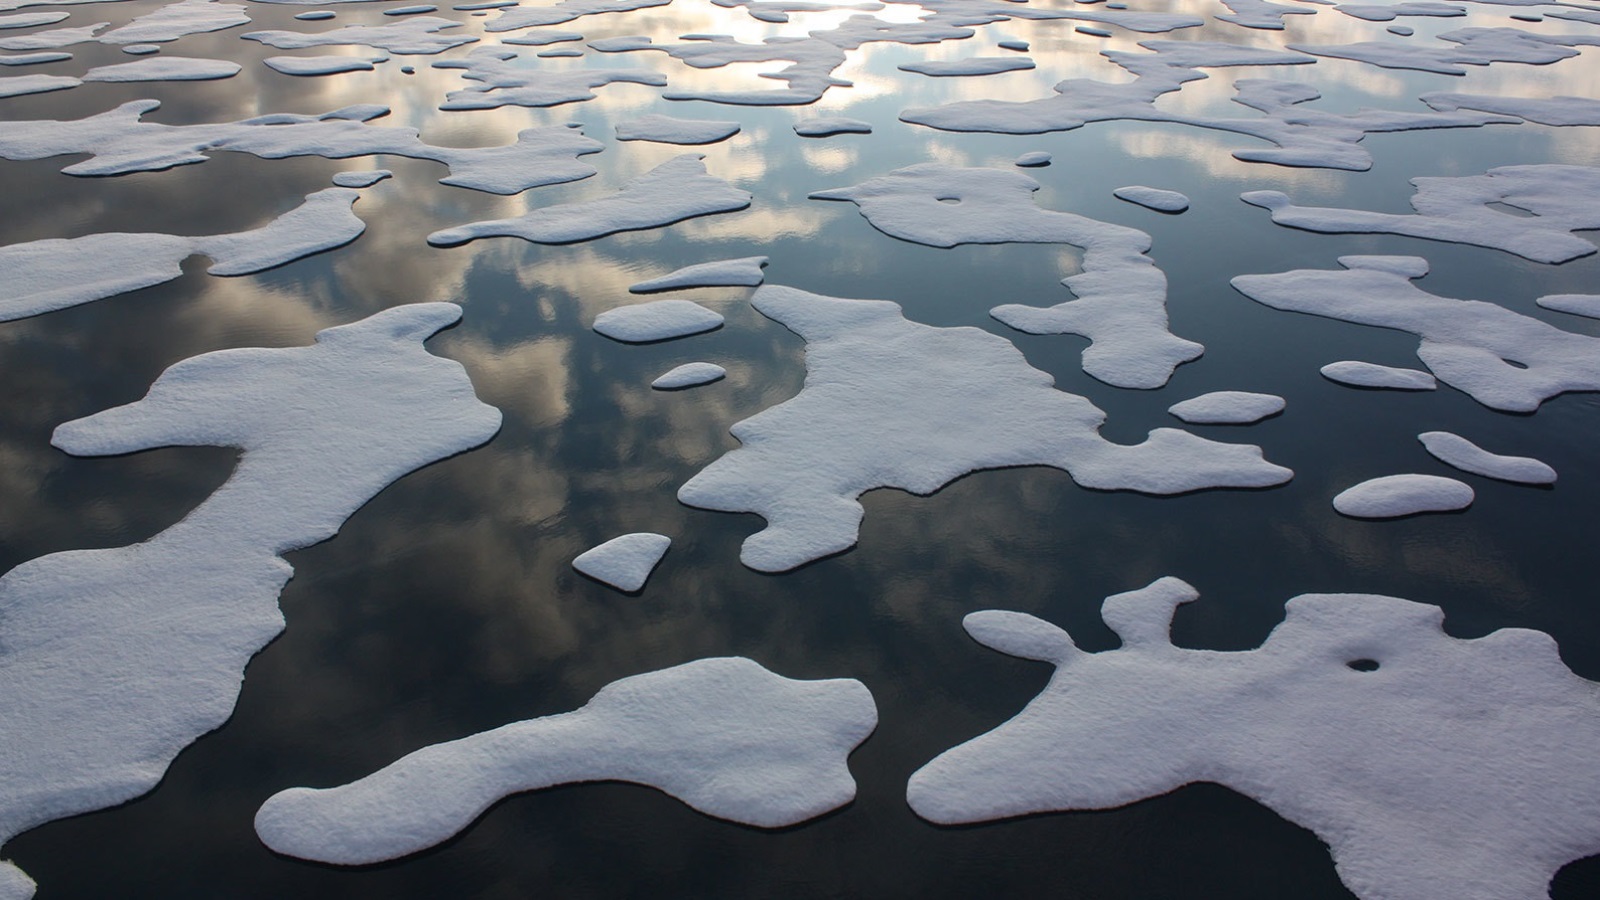 ‪جليد البحر في القطب الشمالي عام 2011 وكيف تؤثر الظروف المتغيرة هناك على كيمياء‬ 
جليد البحر في القطب الشمالي عام 2011 وكيف تؤثر الظروف المتغيرة هناك على كيمياء المحيطات ونظمها الإيكولوجية (ناسا)
